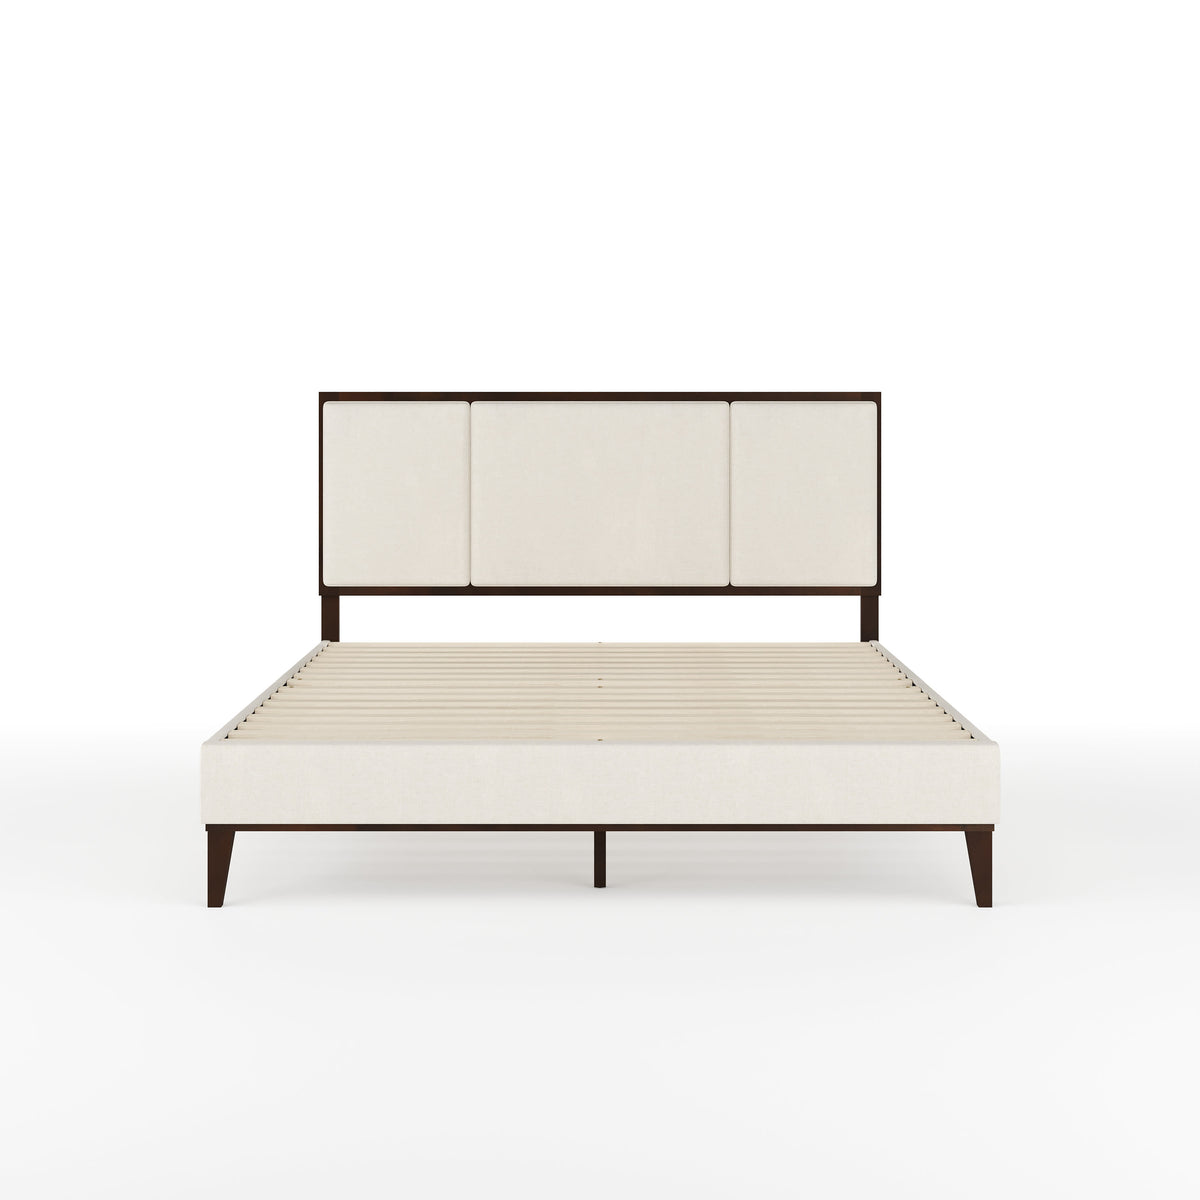 Beige Fabric/Dark Brown Frame,Queen |#| Wooden Queen Size Platform Bed with Upholstered Inset Headboard-Dark Brown/Beige